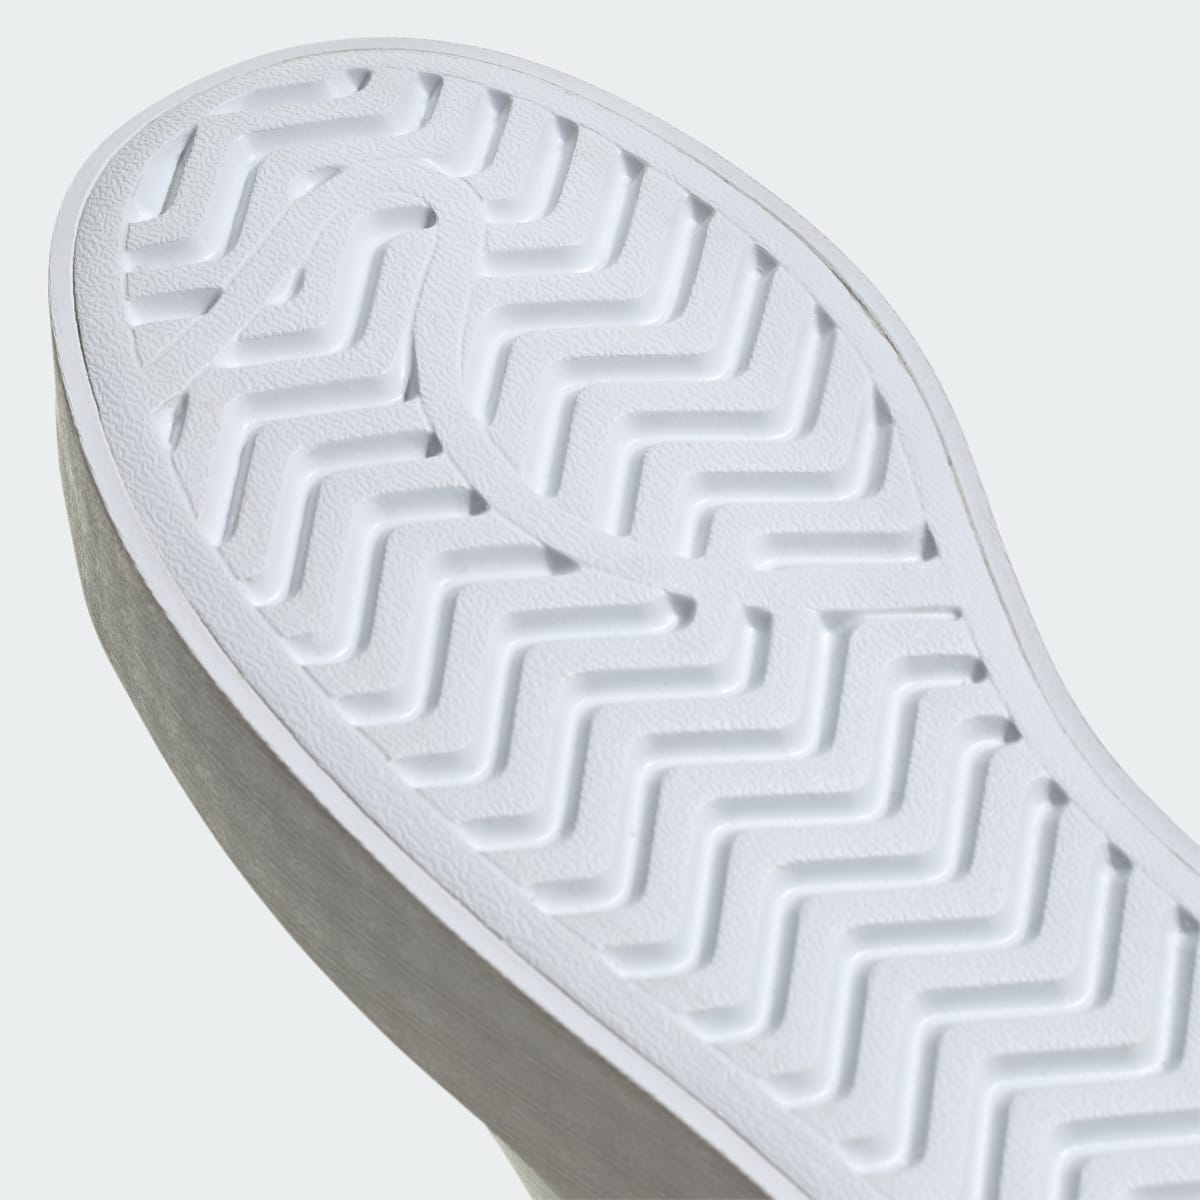 Adidas Stan Smith Bonega Ayakkabı. 4